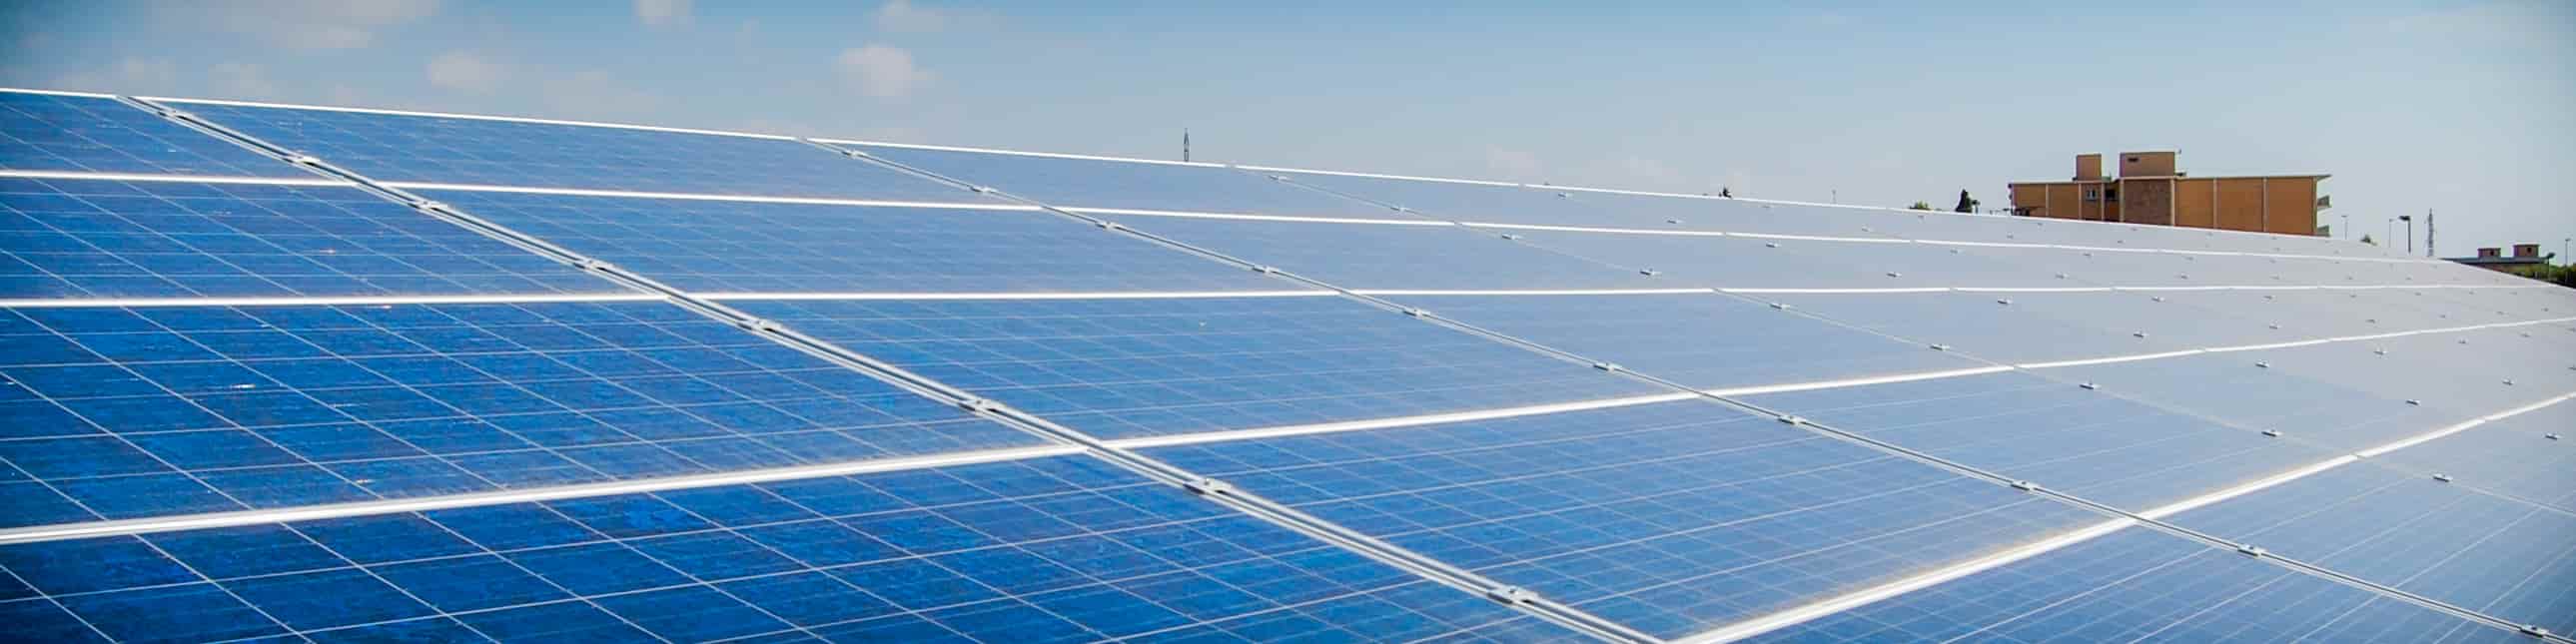 Nota de prensa - La UMU instalará una gran planta fotovoltaica en el...